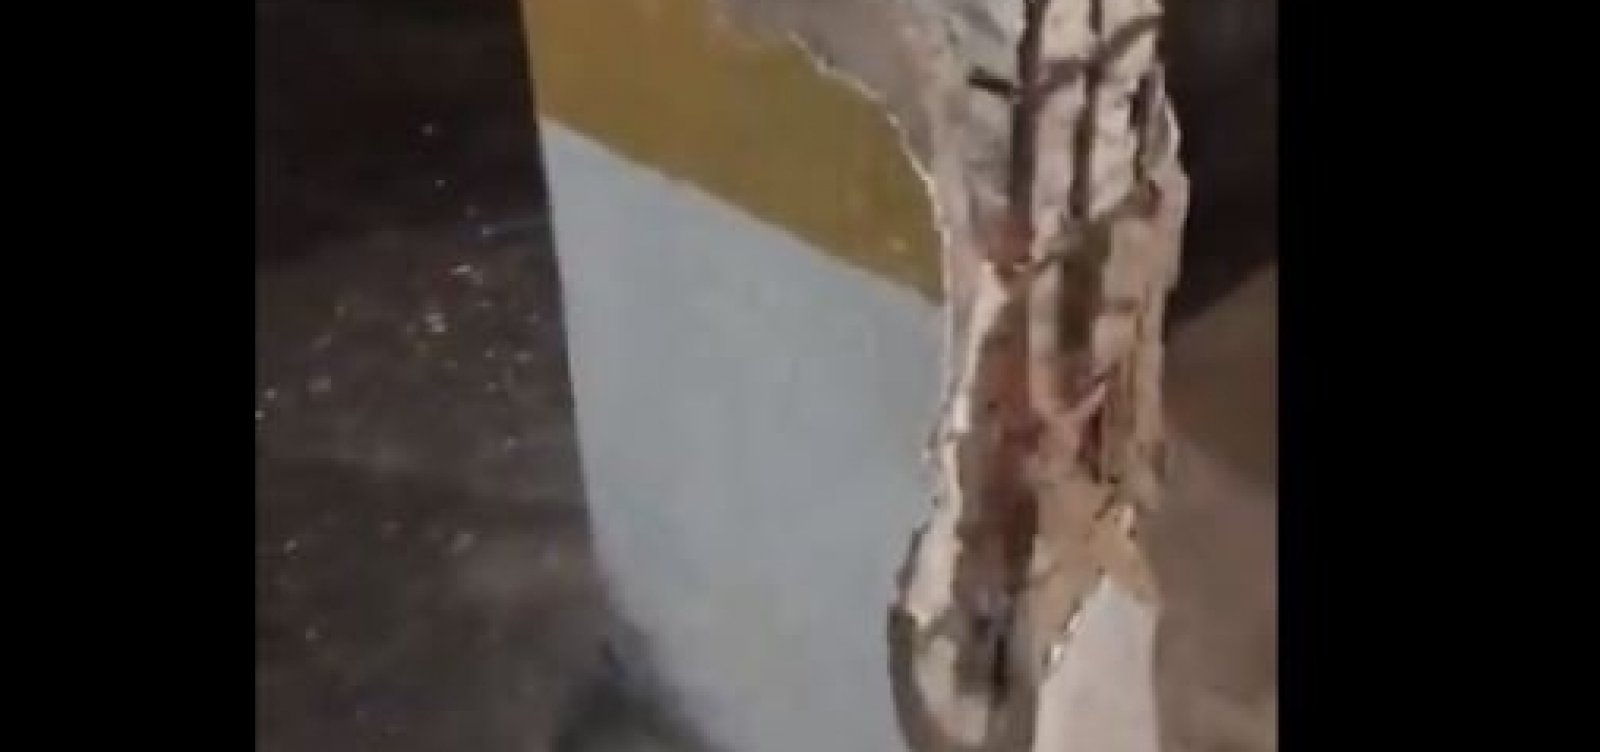 Vídeo aponta más condições de prédio que caiu em Fortaleza; veja